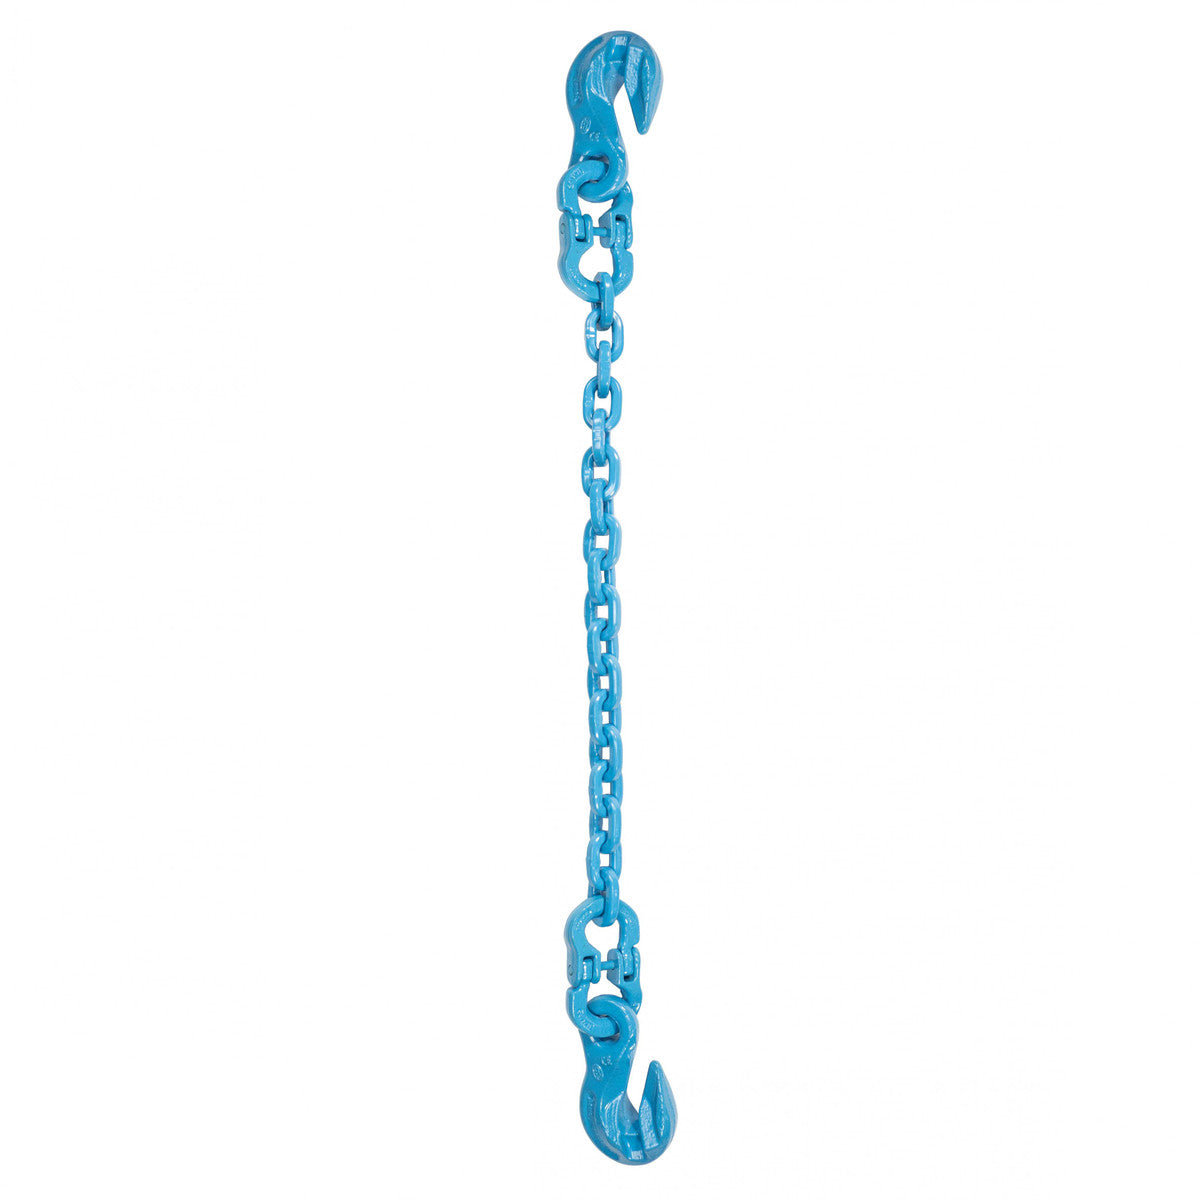 9/32" x 6' - Pewag Single Leg Chain Sling w/ Grab & Grab Hooks - Grade 120